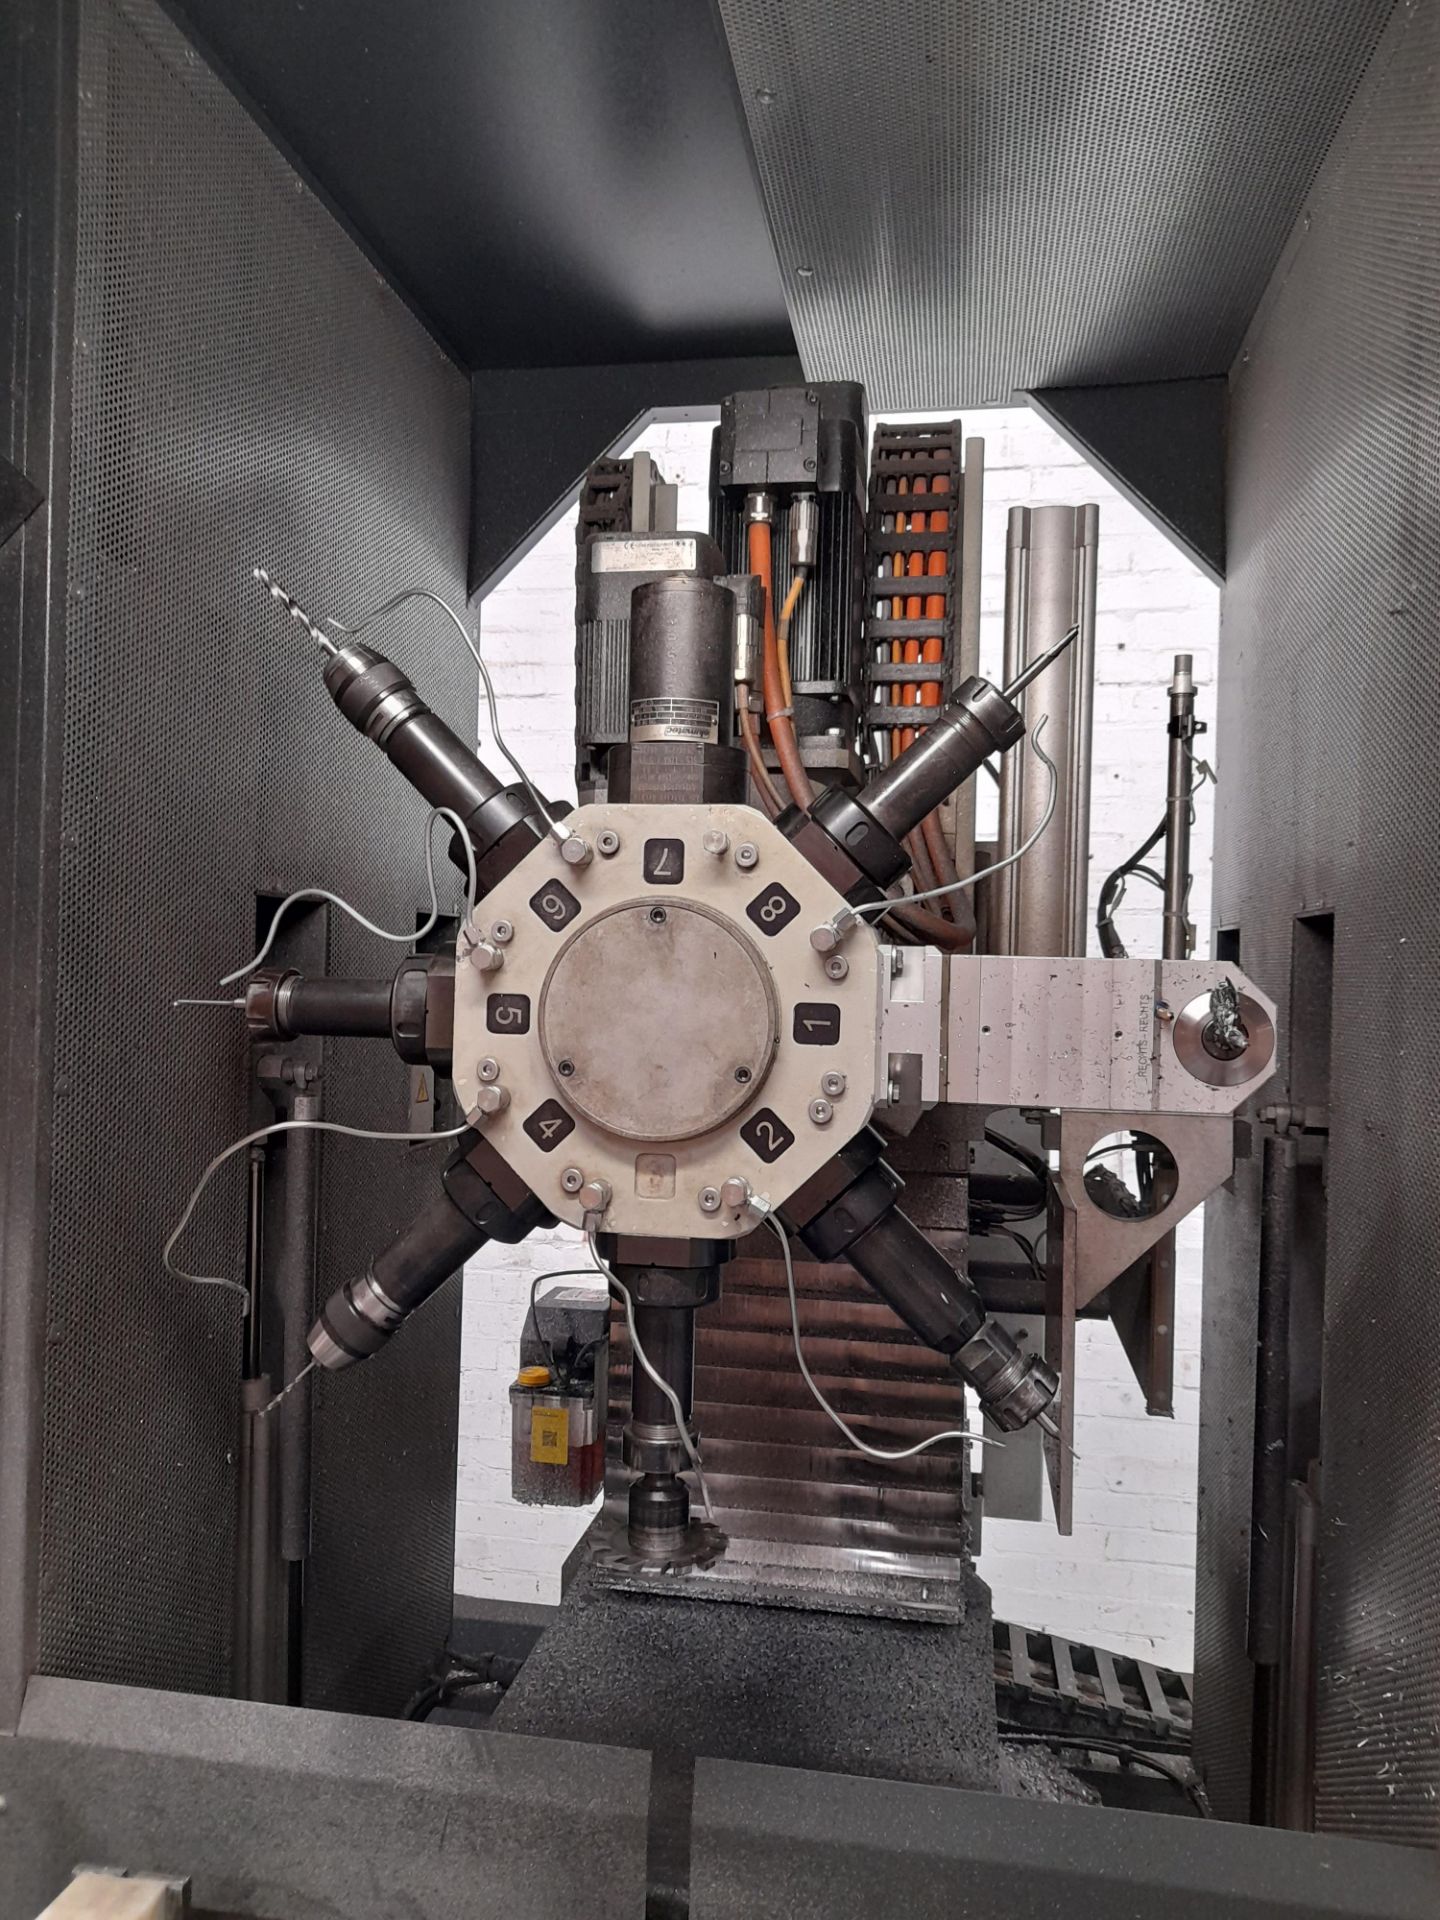 Elumatec SBZ130 Profile Machine Centre 7.2M PKG10, - Image 4 of 12